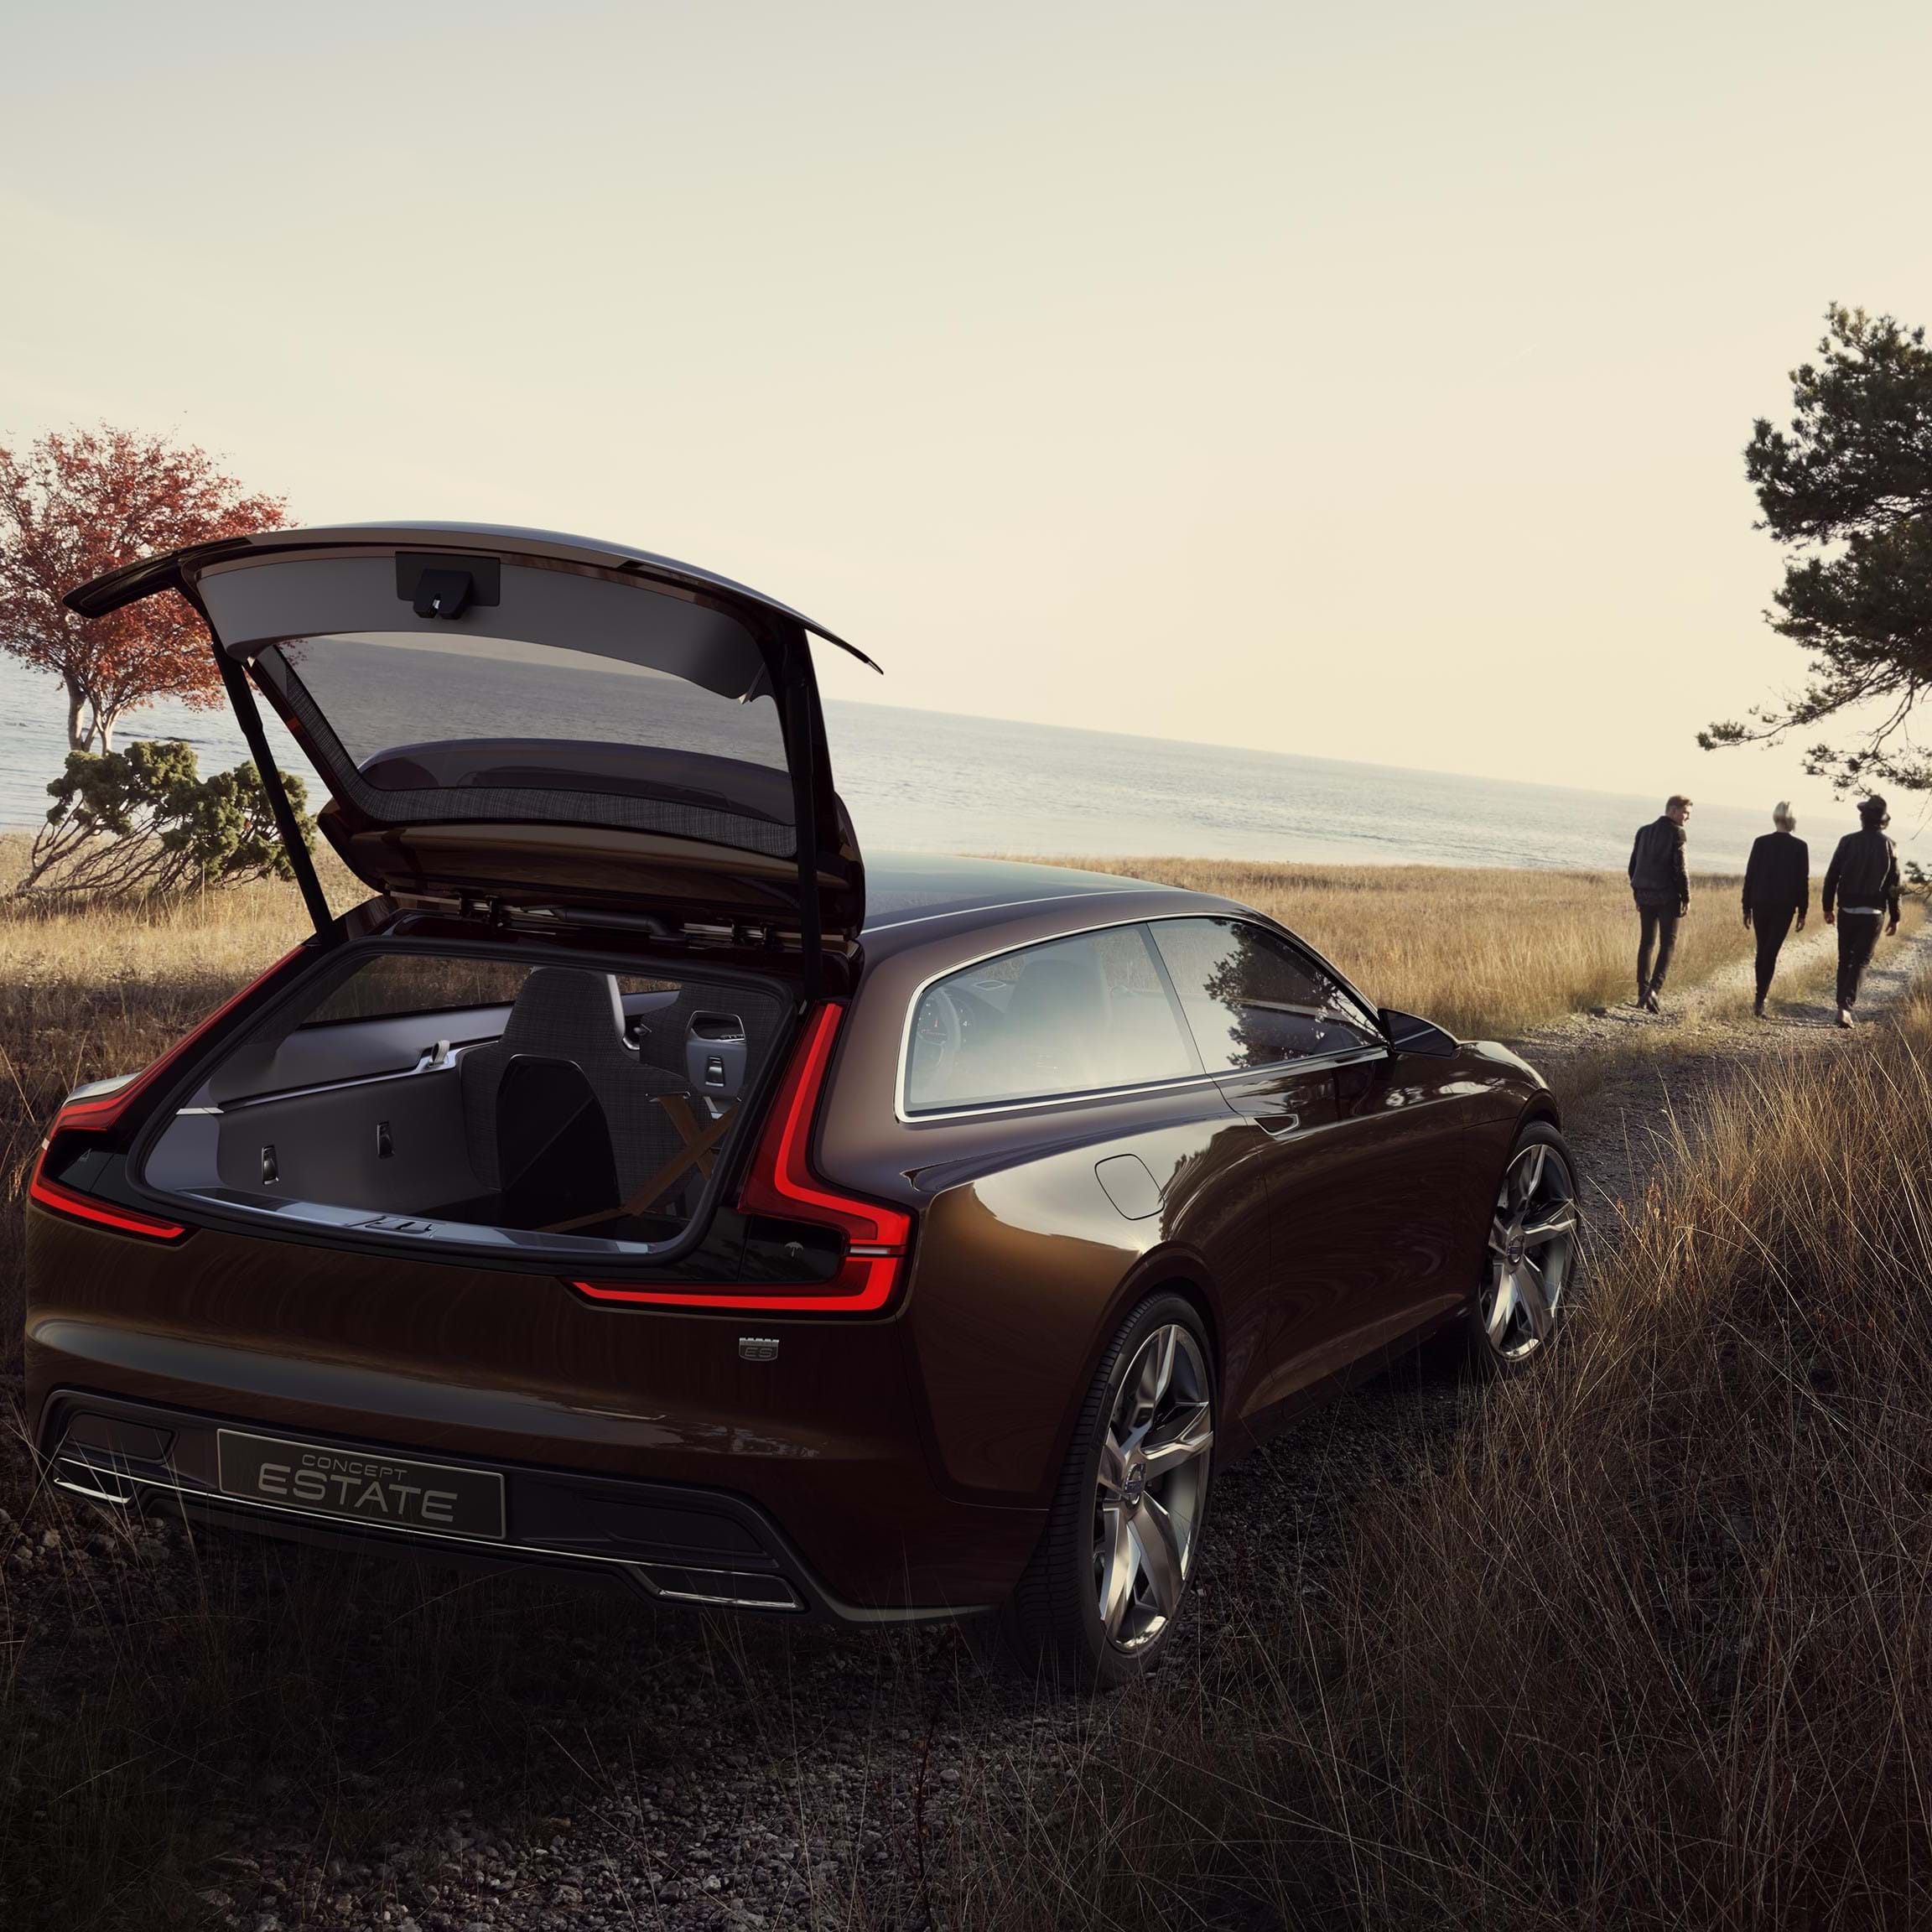 Concept Estate Volvo avec hayon ouvert montrant l'espace à bagages sur une route de campagne